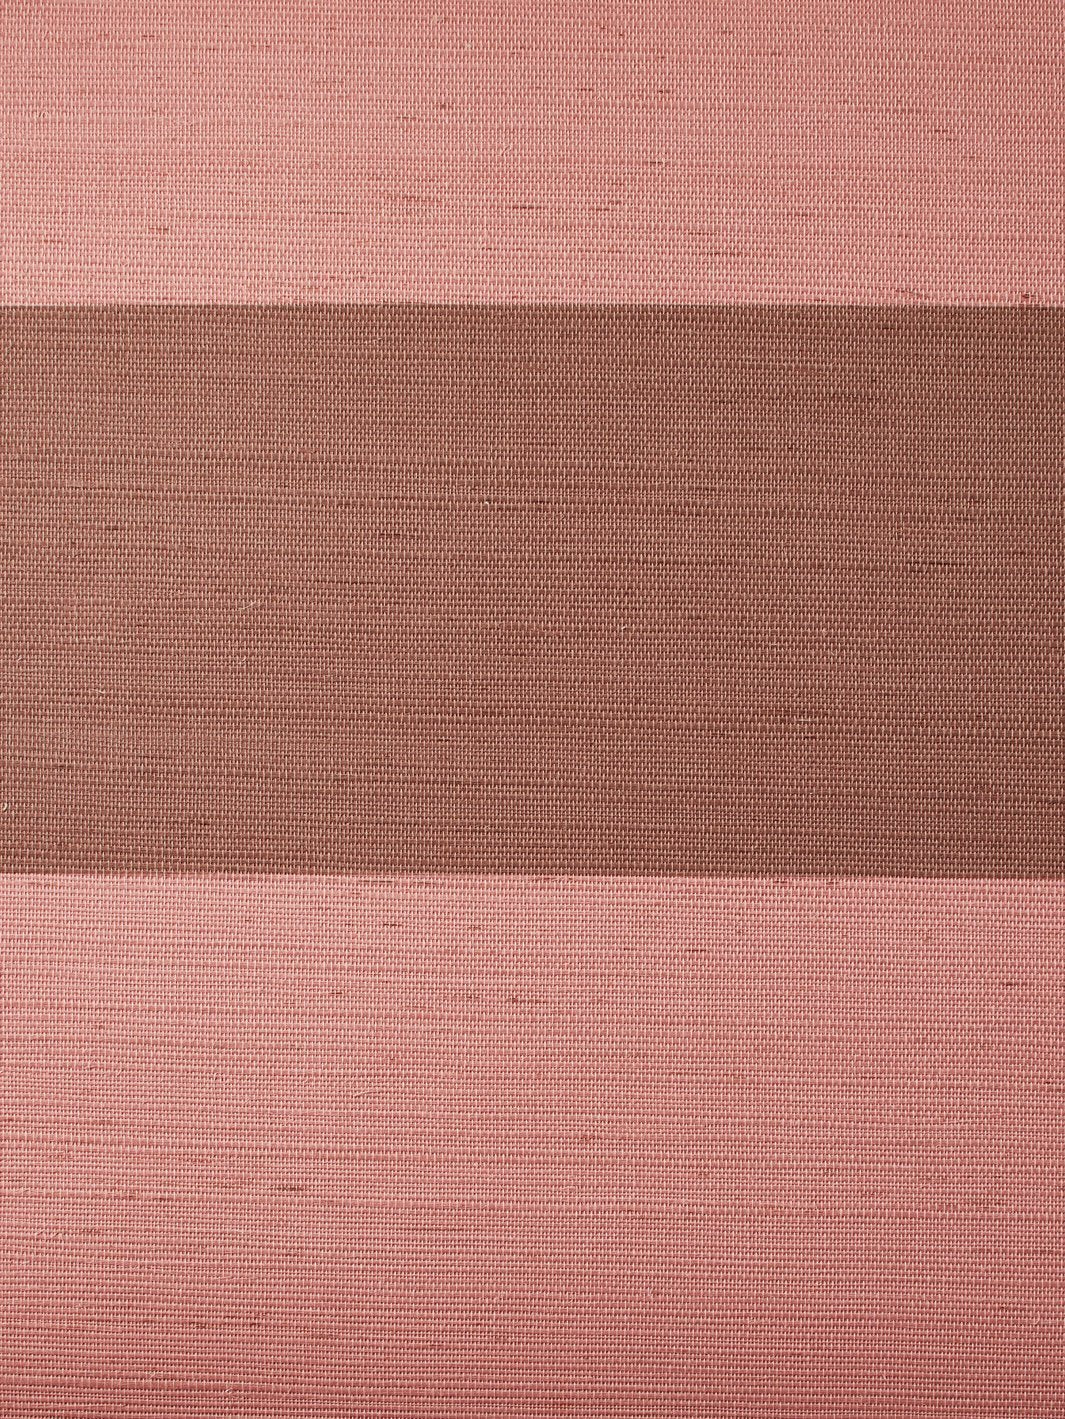 'Wide Stripe Two Color' Grasscloth' Wallpaper by Wallshoppe - Adobe Slip